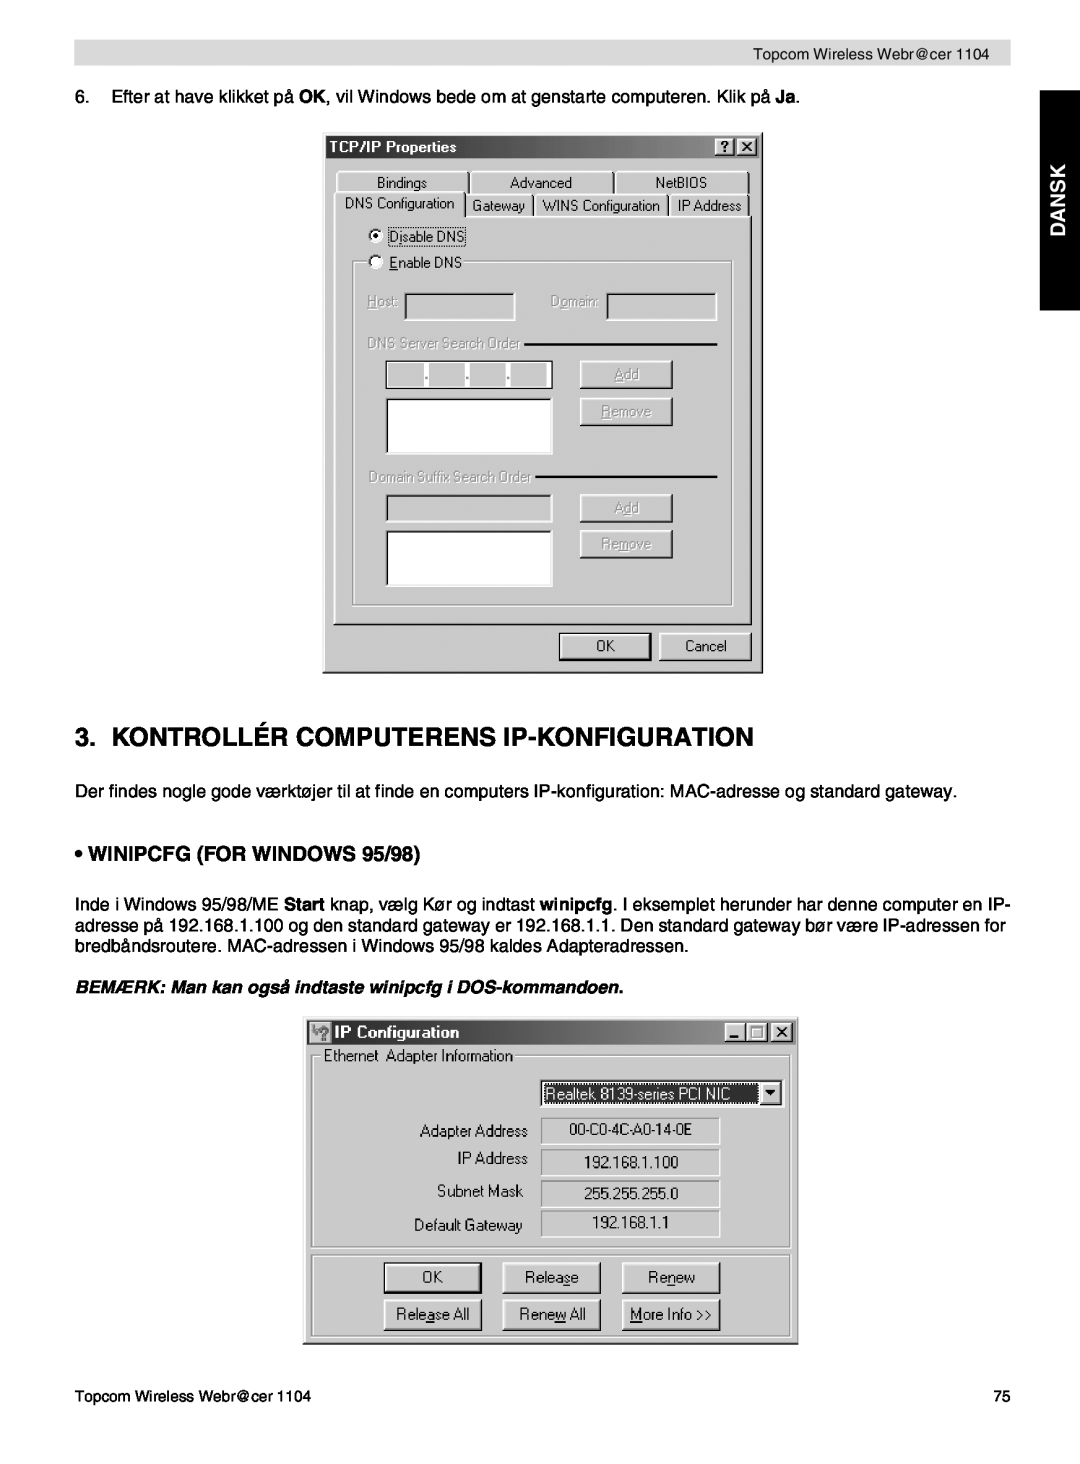 Topcom 1104 Kontrollér Computerens Ip-Konfiguration, Dansk, BEMÆRK Man kan også indtaste winipcfg i DOS-kommandoen 